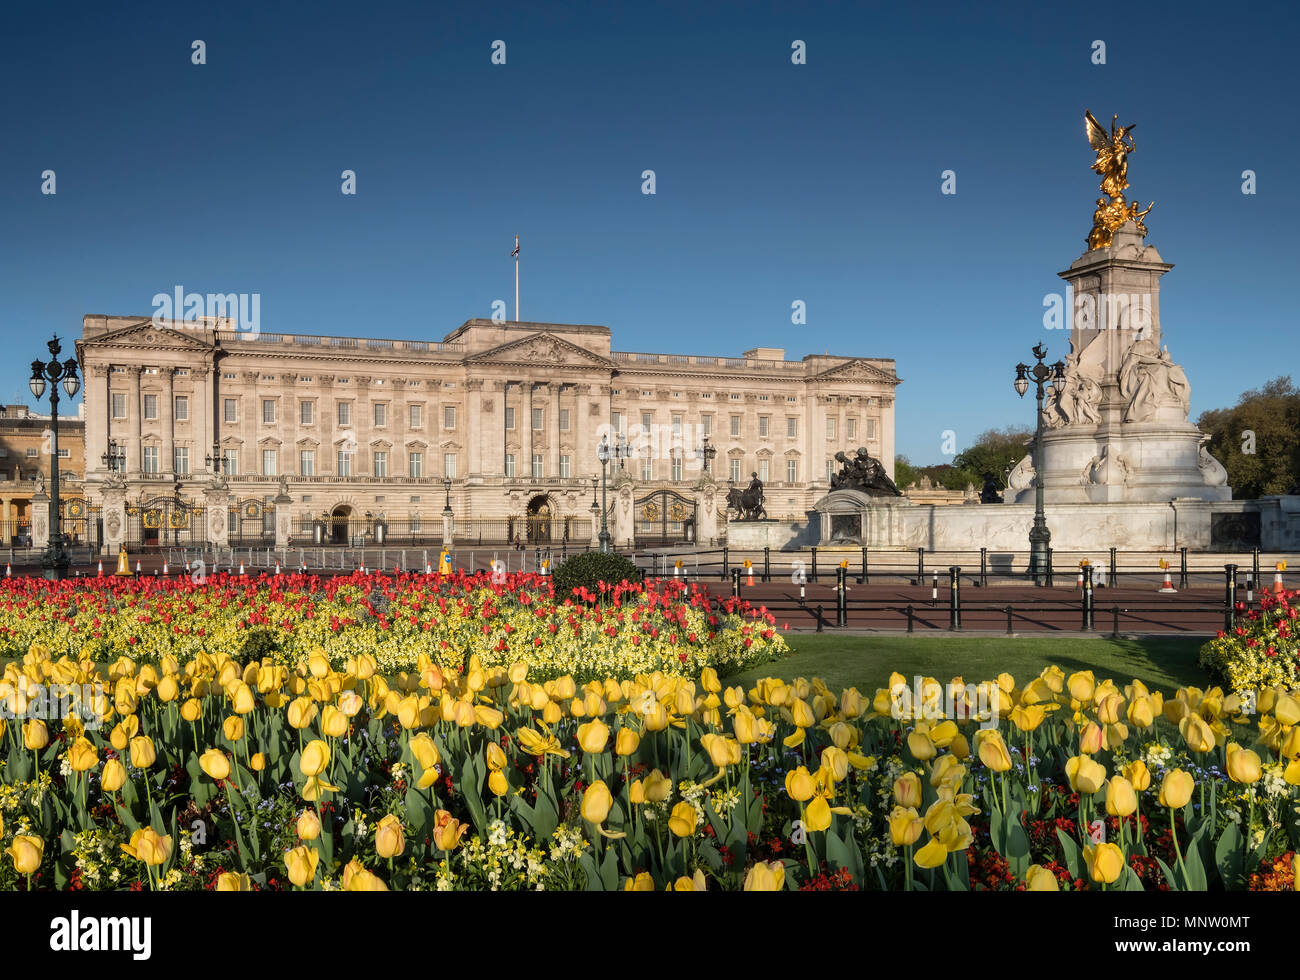 El Palacio de Buckingham y el Victoria Memorial en primavera, Londres, Inglaterra, Reino Unido. Foto de stock